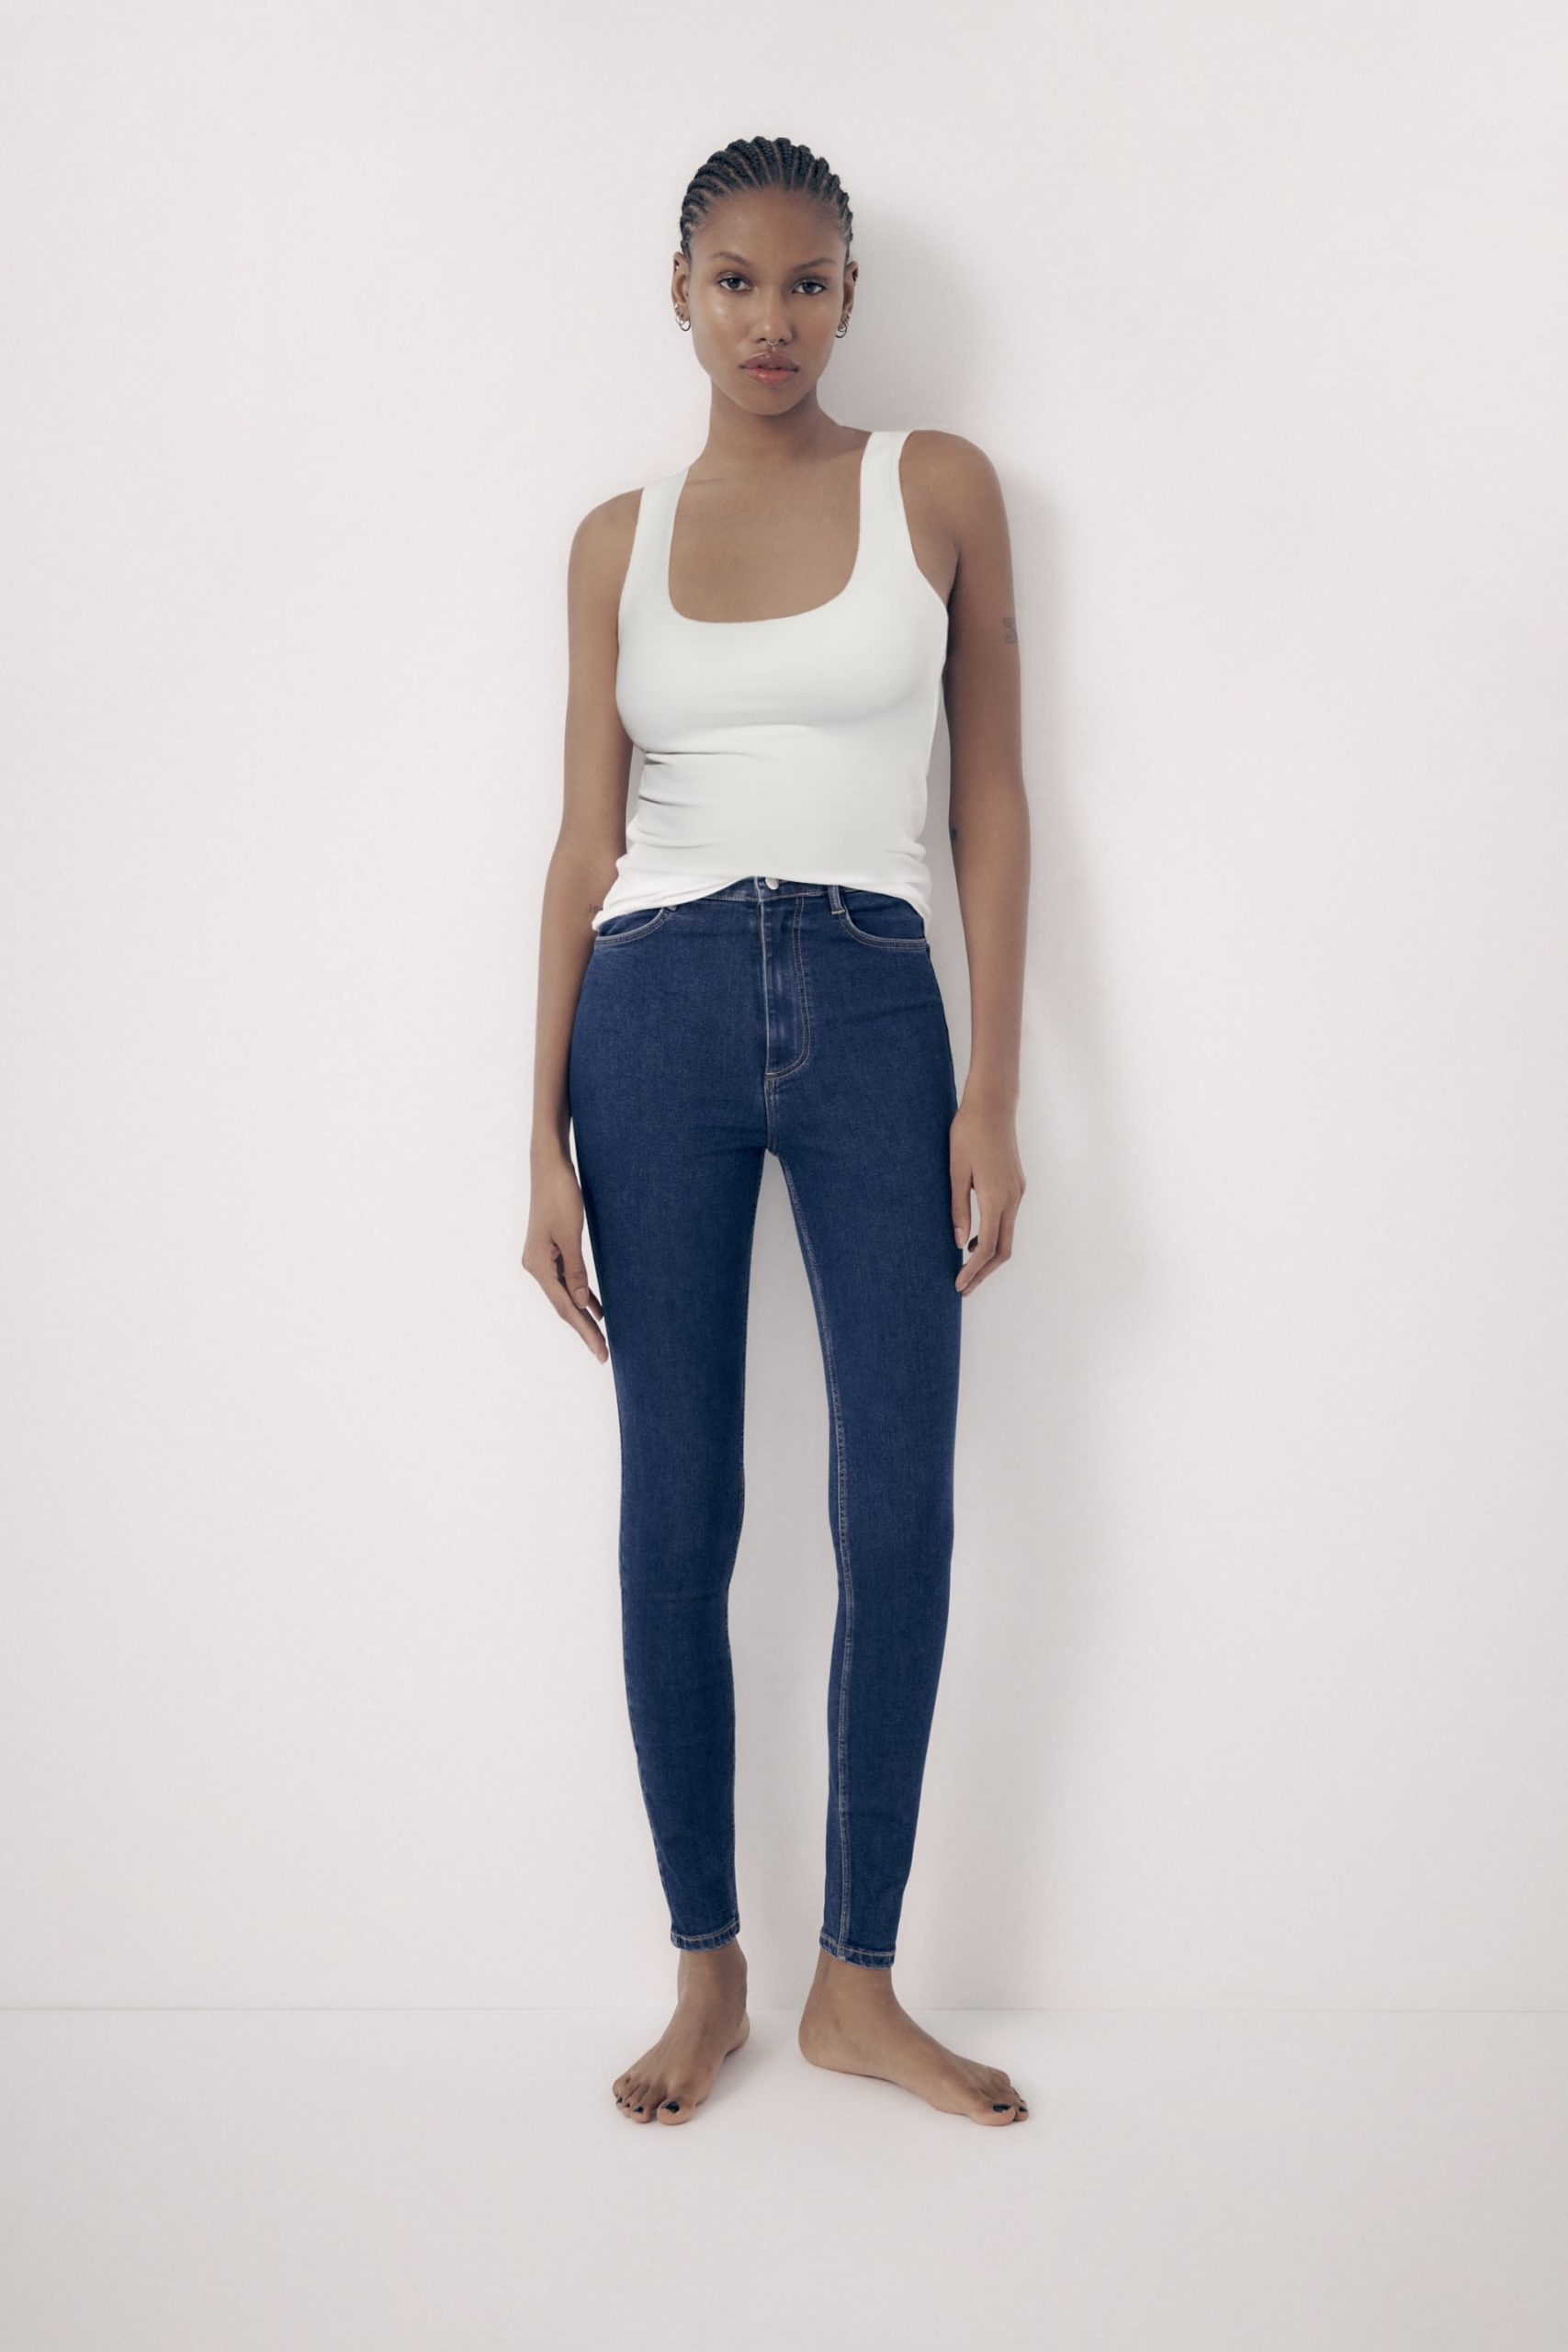 Zara enloquece a sus clientes con estos jeans que sientan de lujo